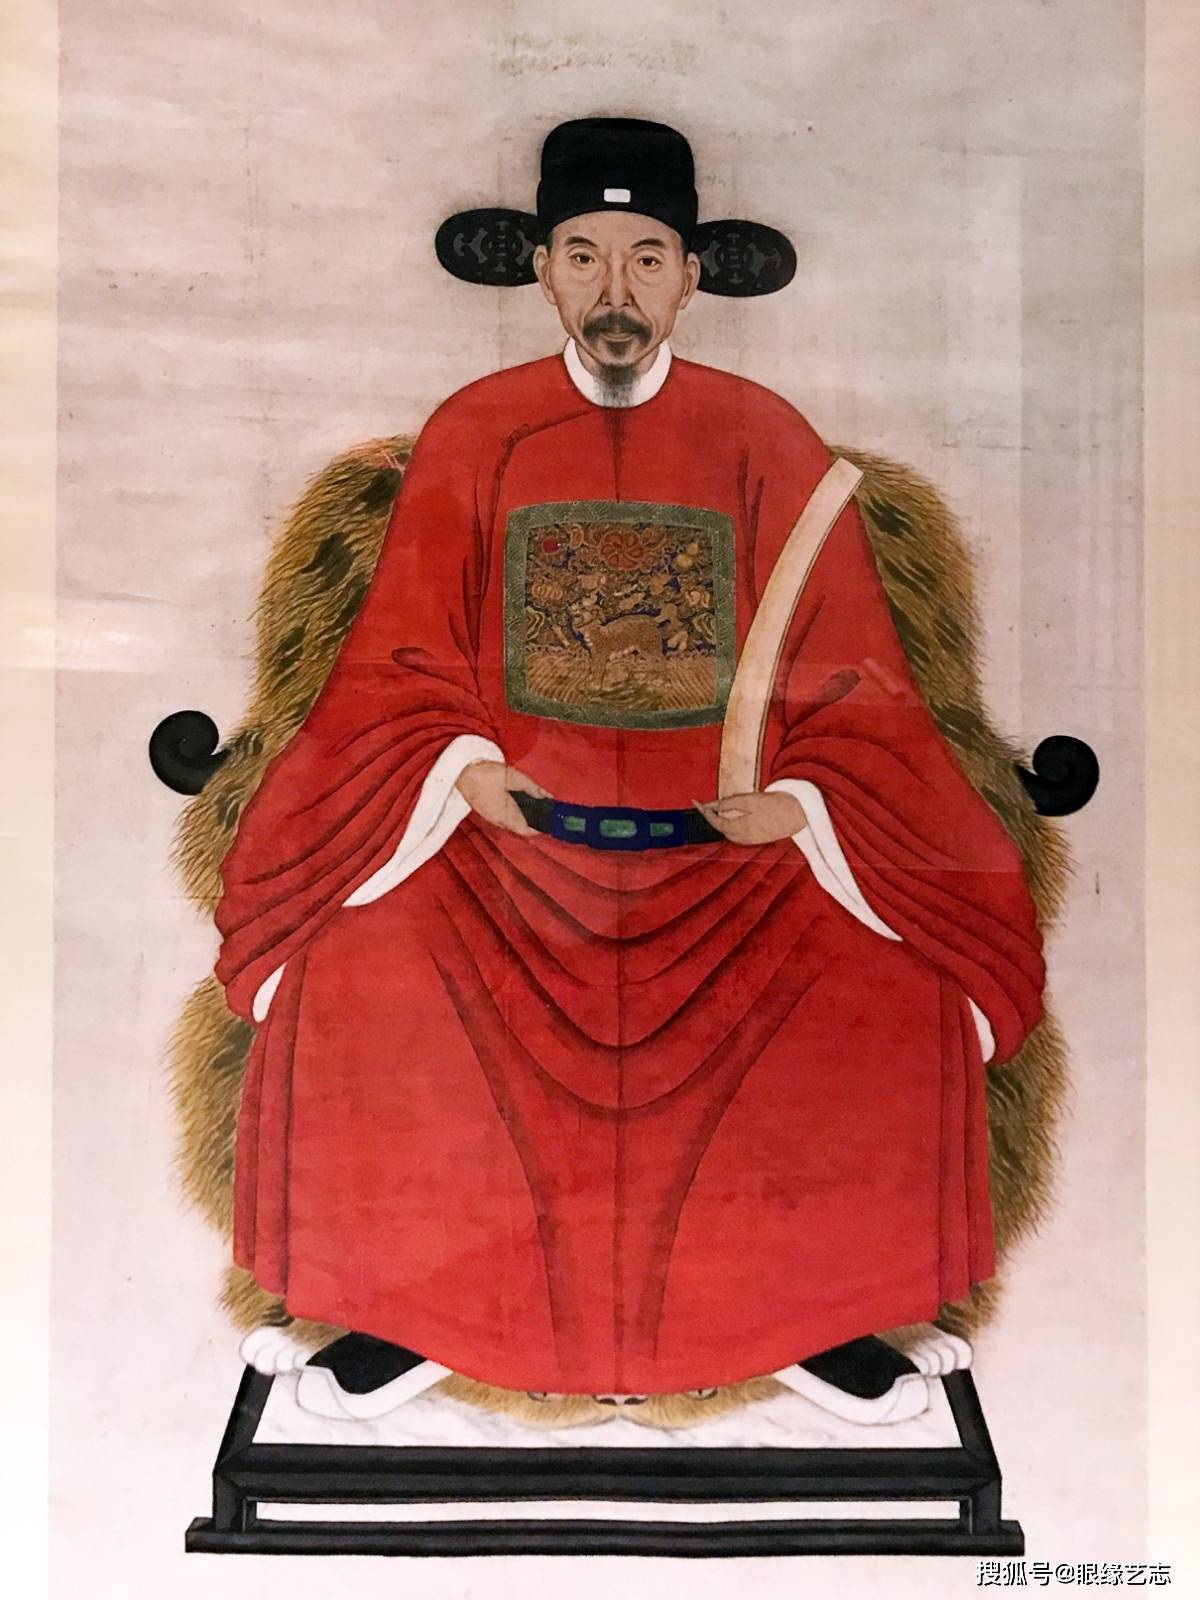 帝国的雄起改变了古代肖像画的命运,大抵是西汉时期,这些清雅的墨色从